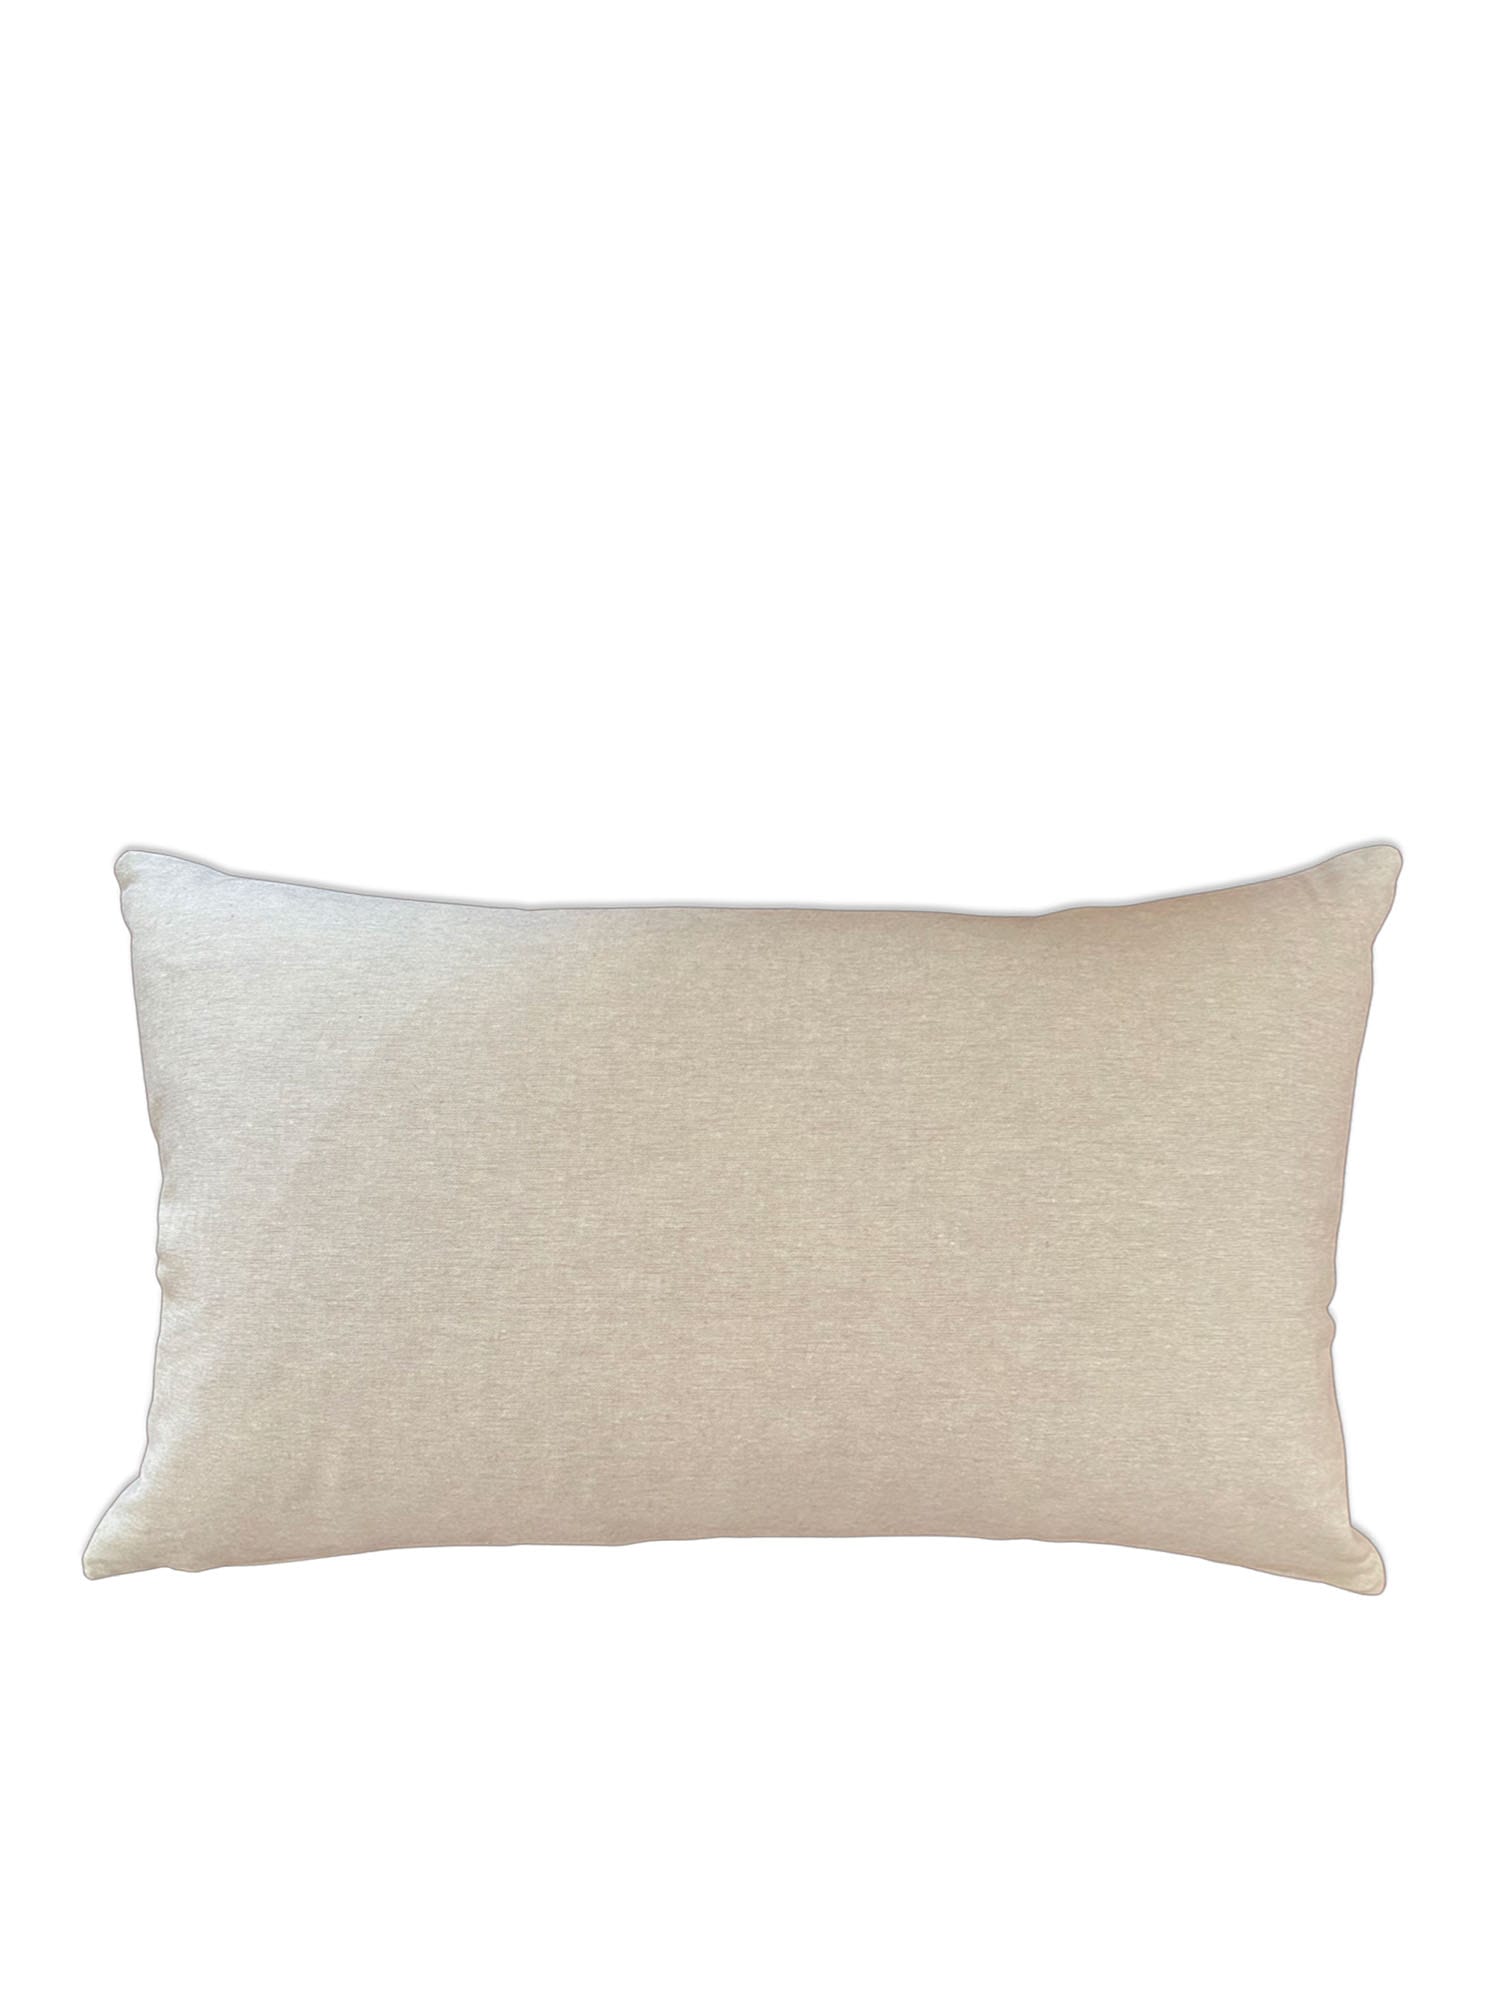 Gamon White Lumbar Pillow